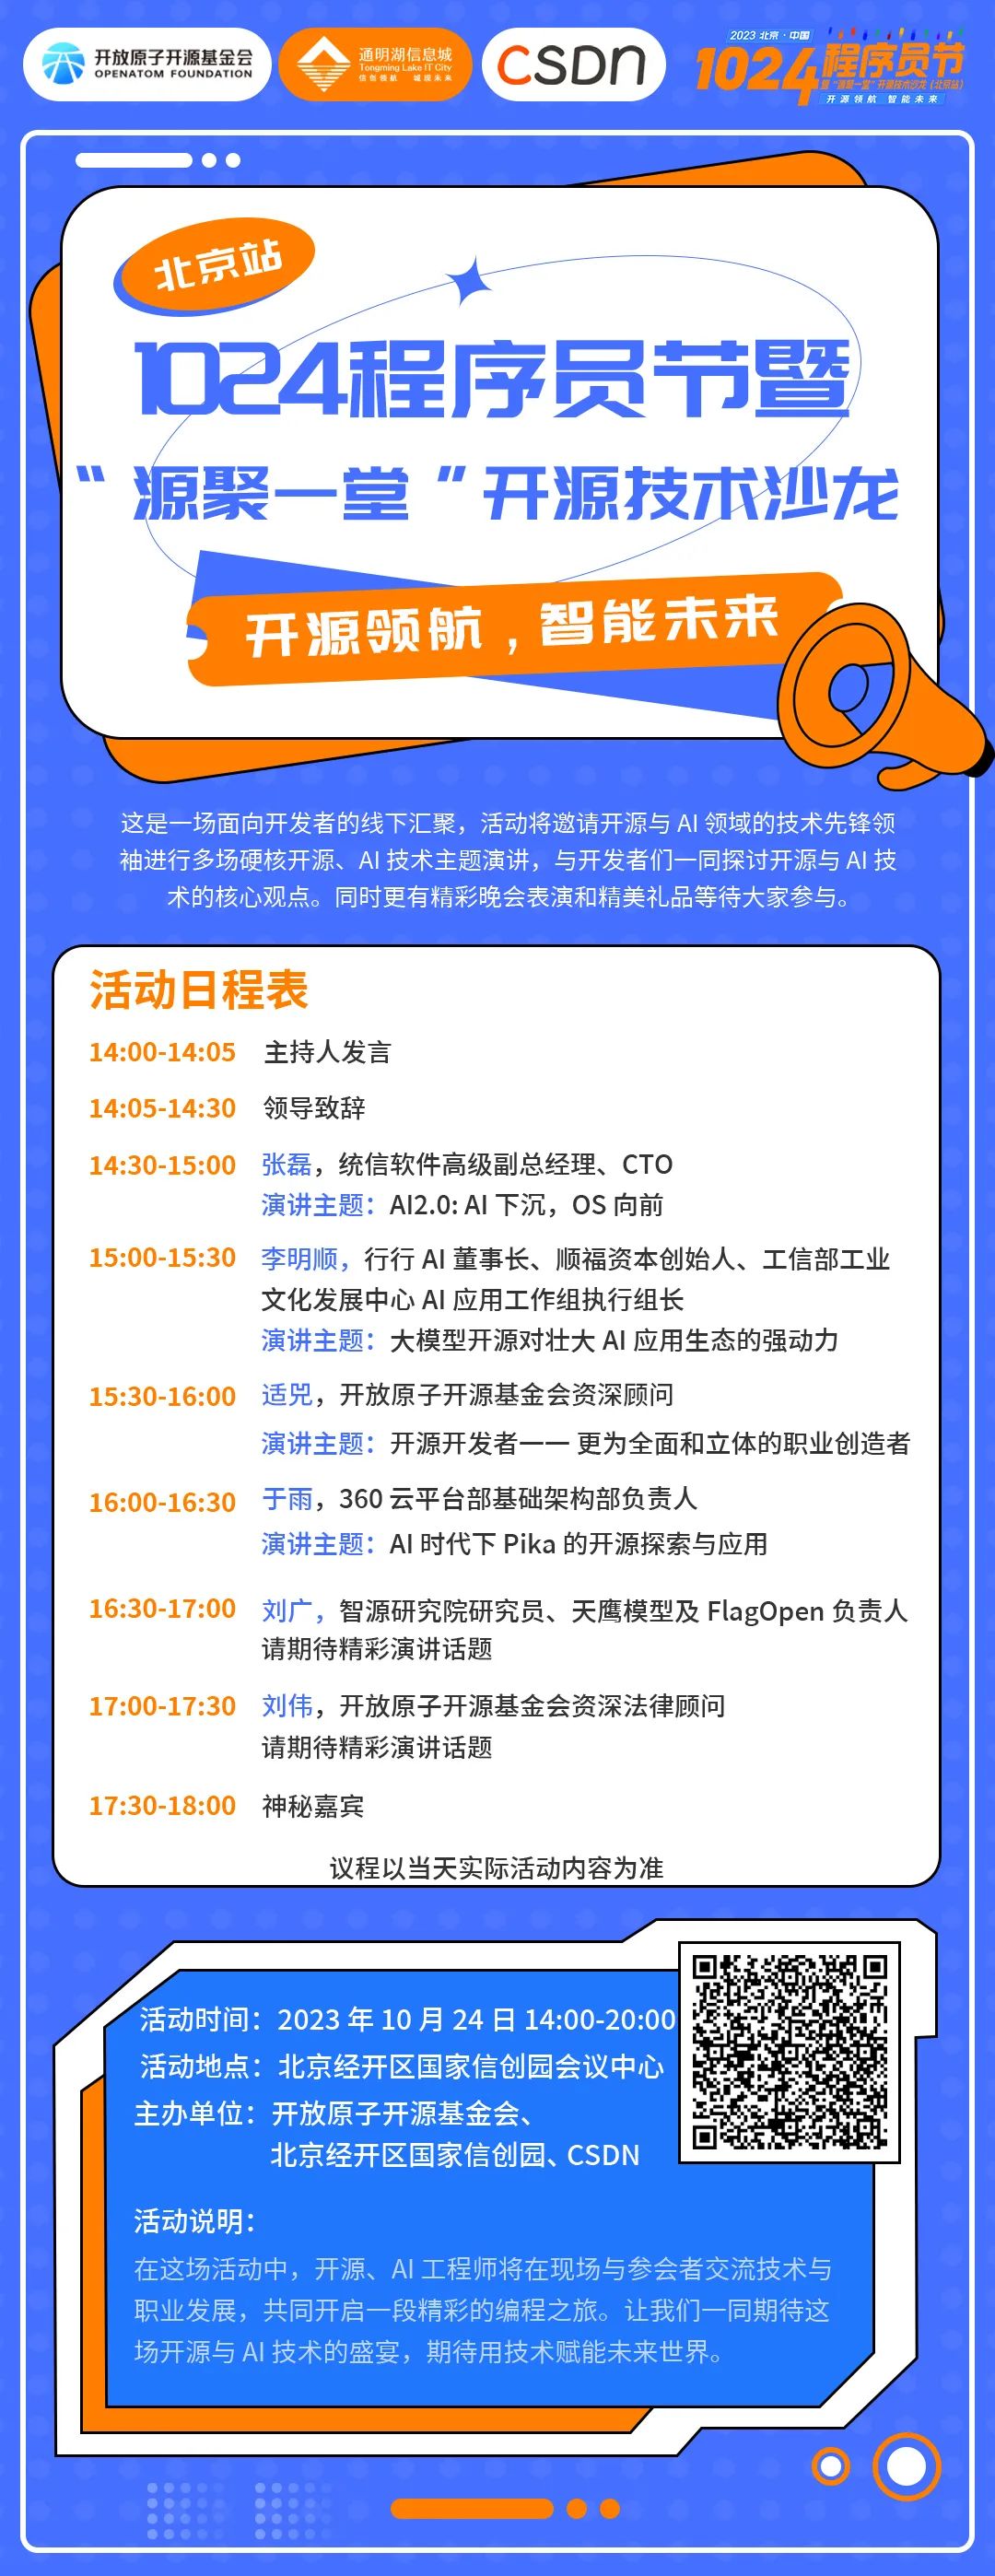 1024程序员节暨「源聚一堂」开源技术沙龙（北京站）火热报名中